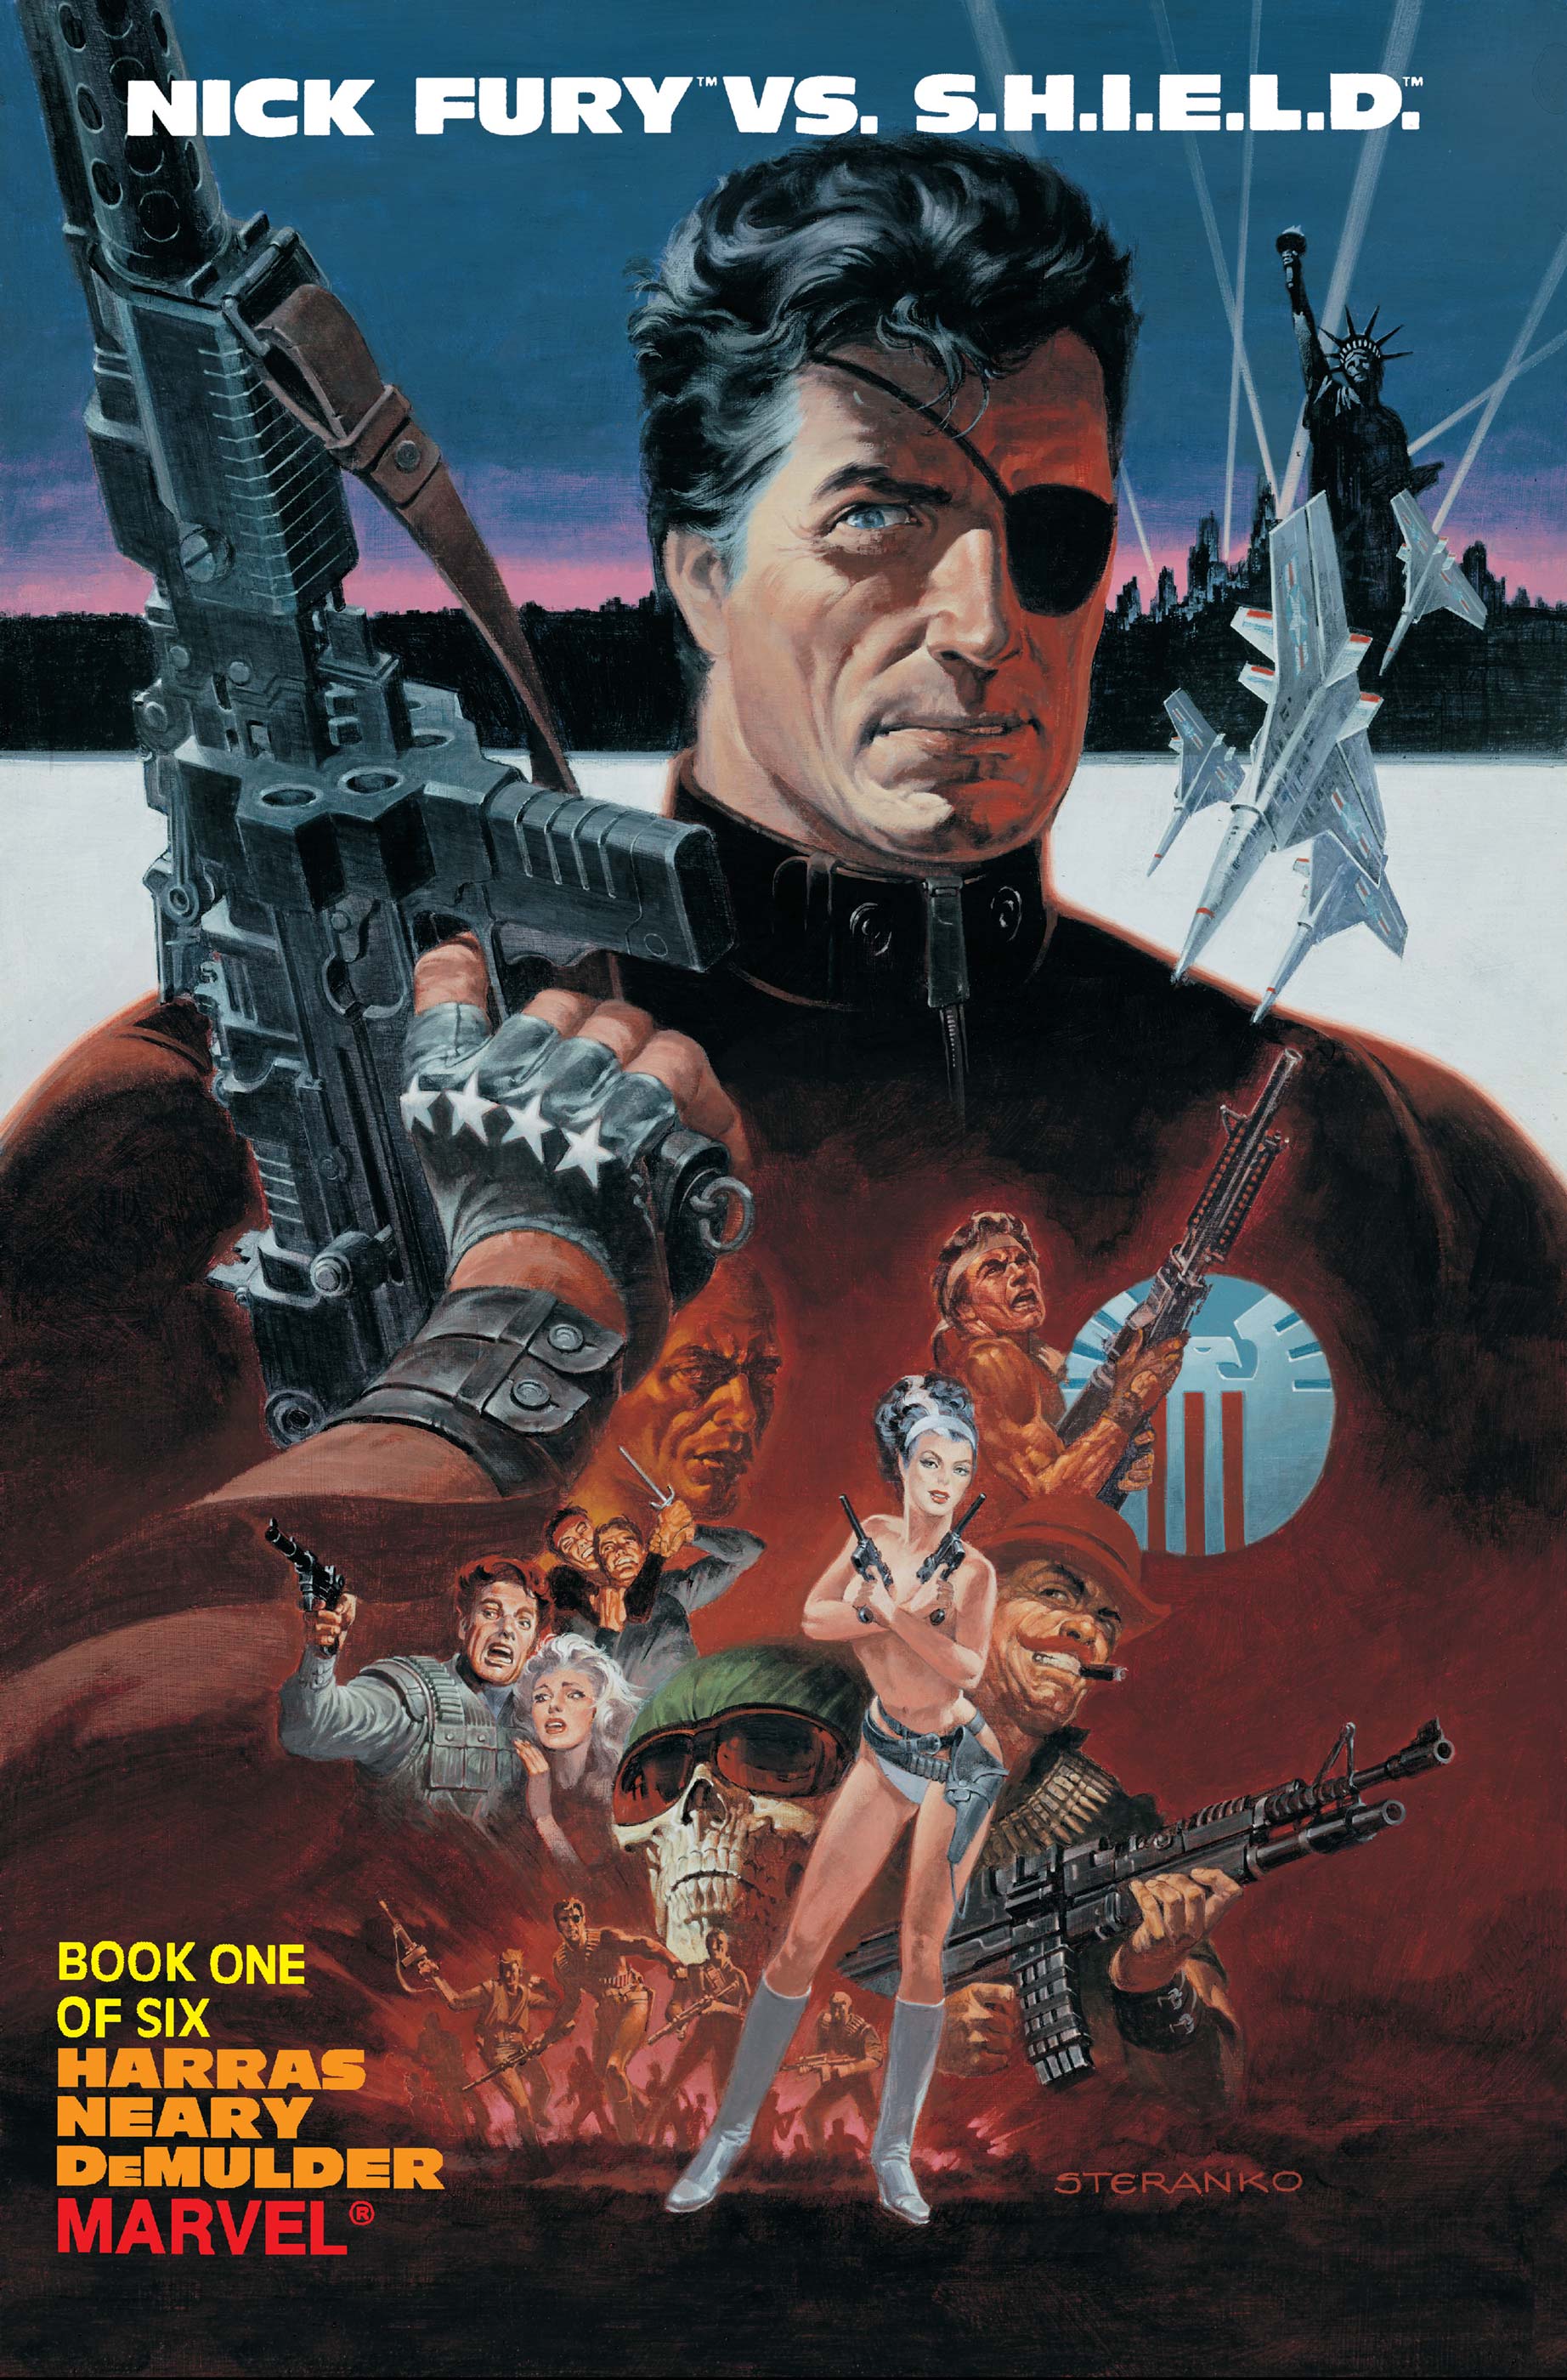 Nick Fury Vs. S.H.I.E.L.D. (1988) #1